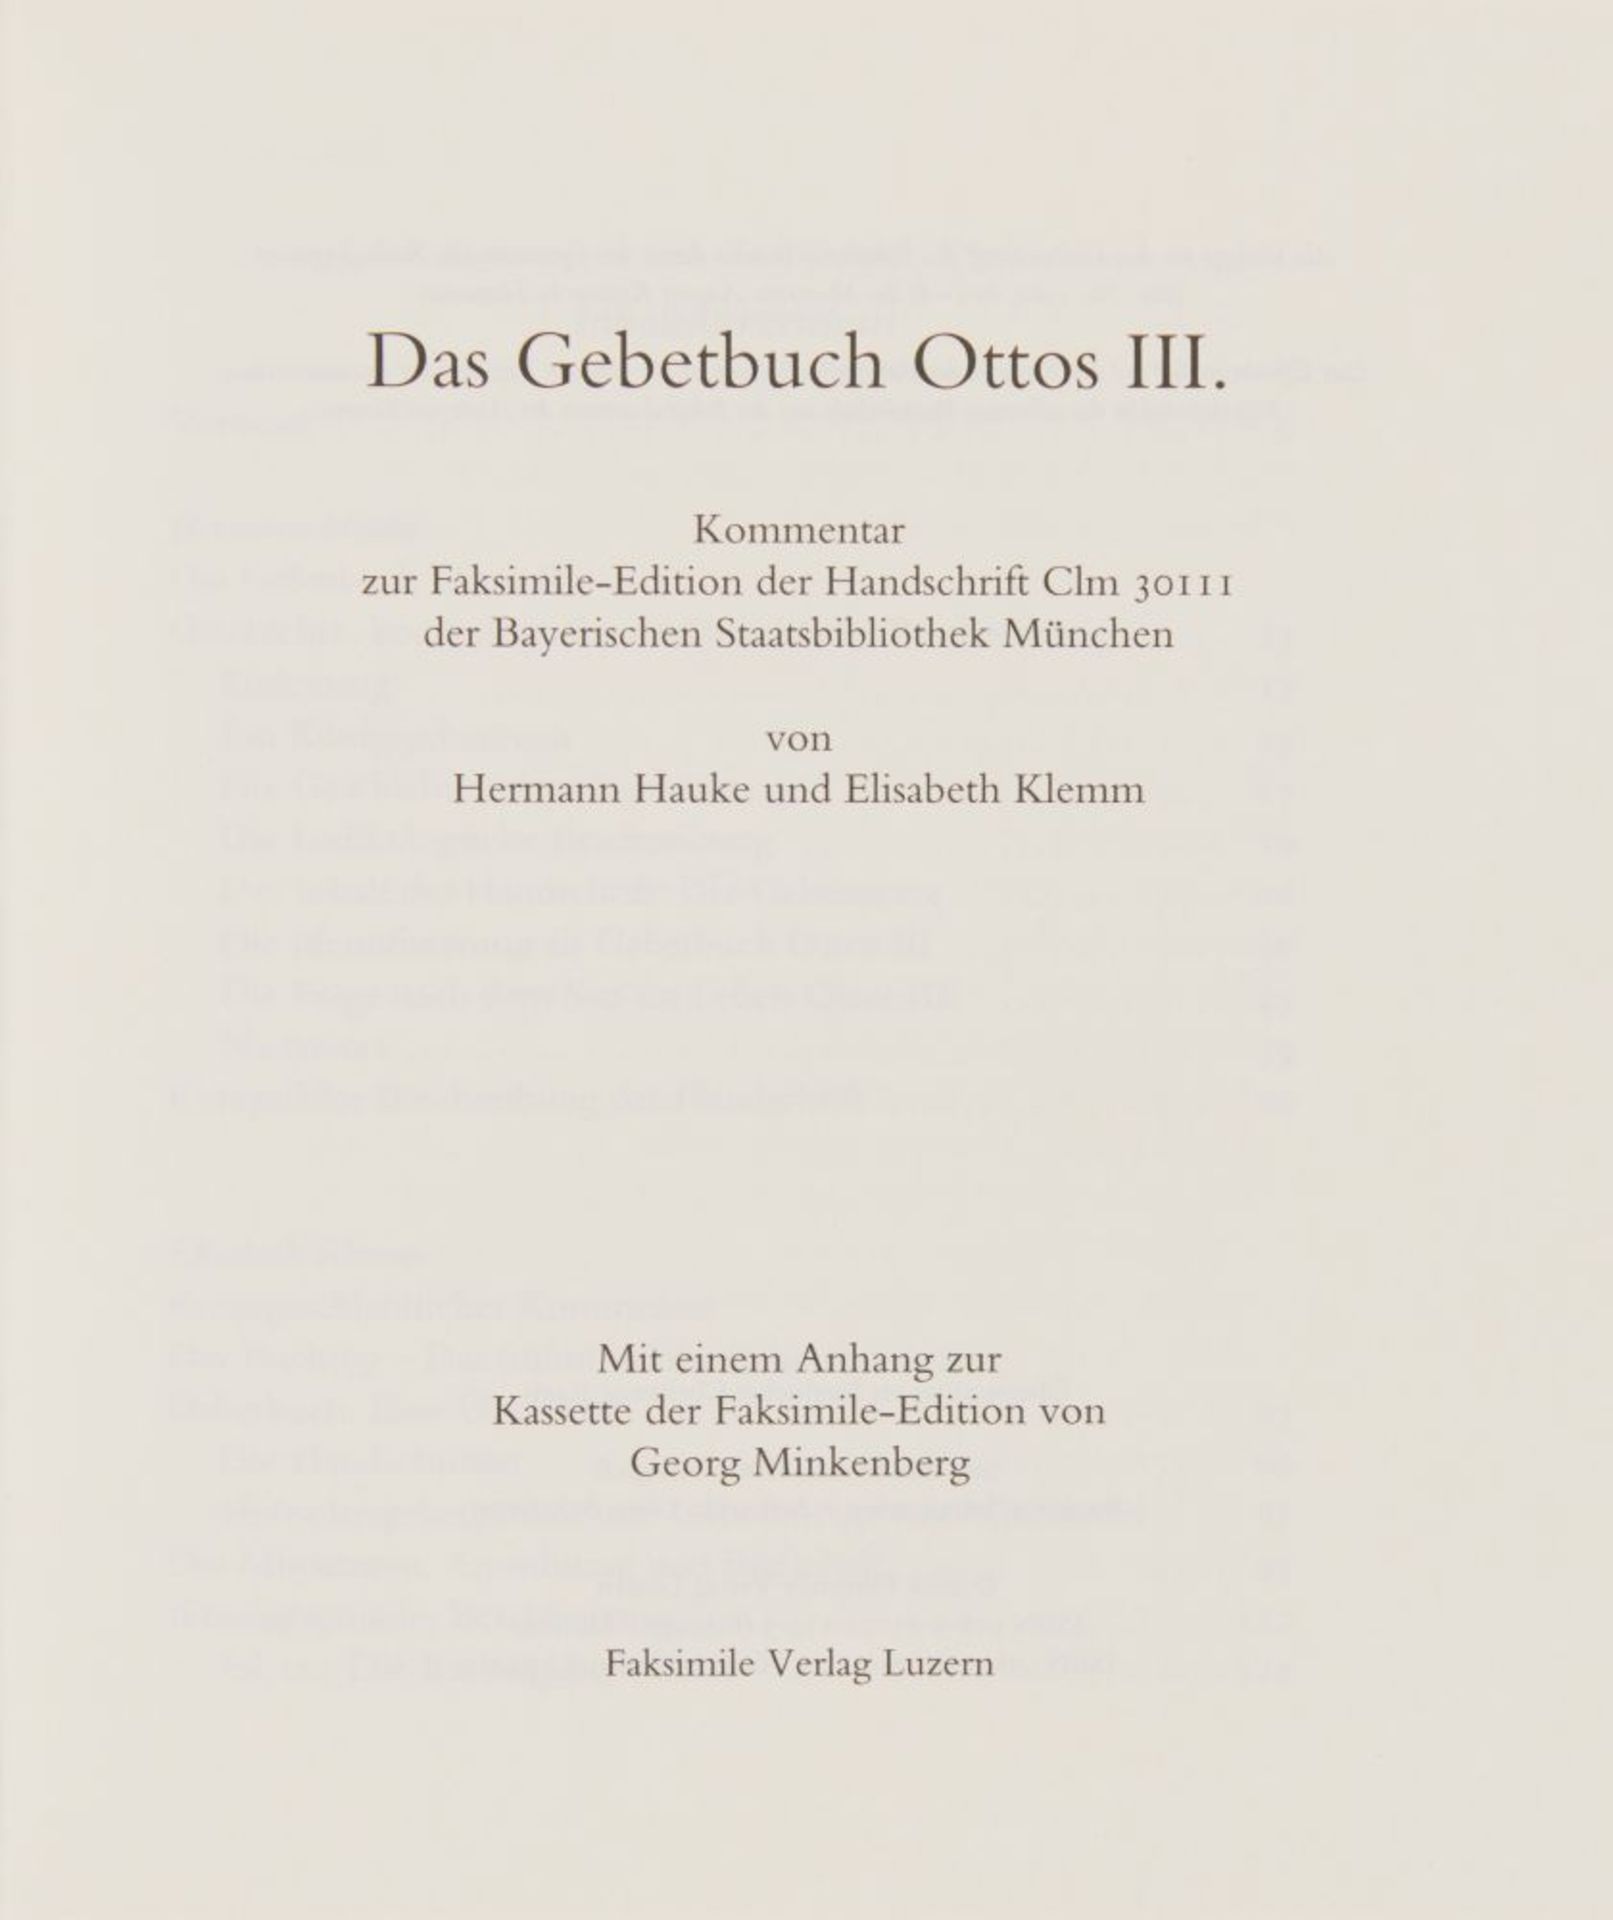 Das Gebetbuch Ottos III. Faksimile in OrKassette. 2 Bde. Luzern 2008. Ex. 508/980. - Bild 2 aus 3